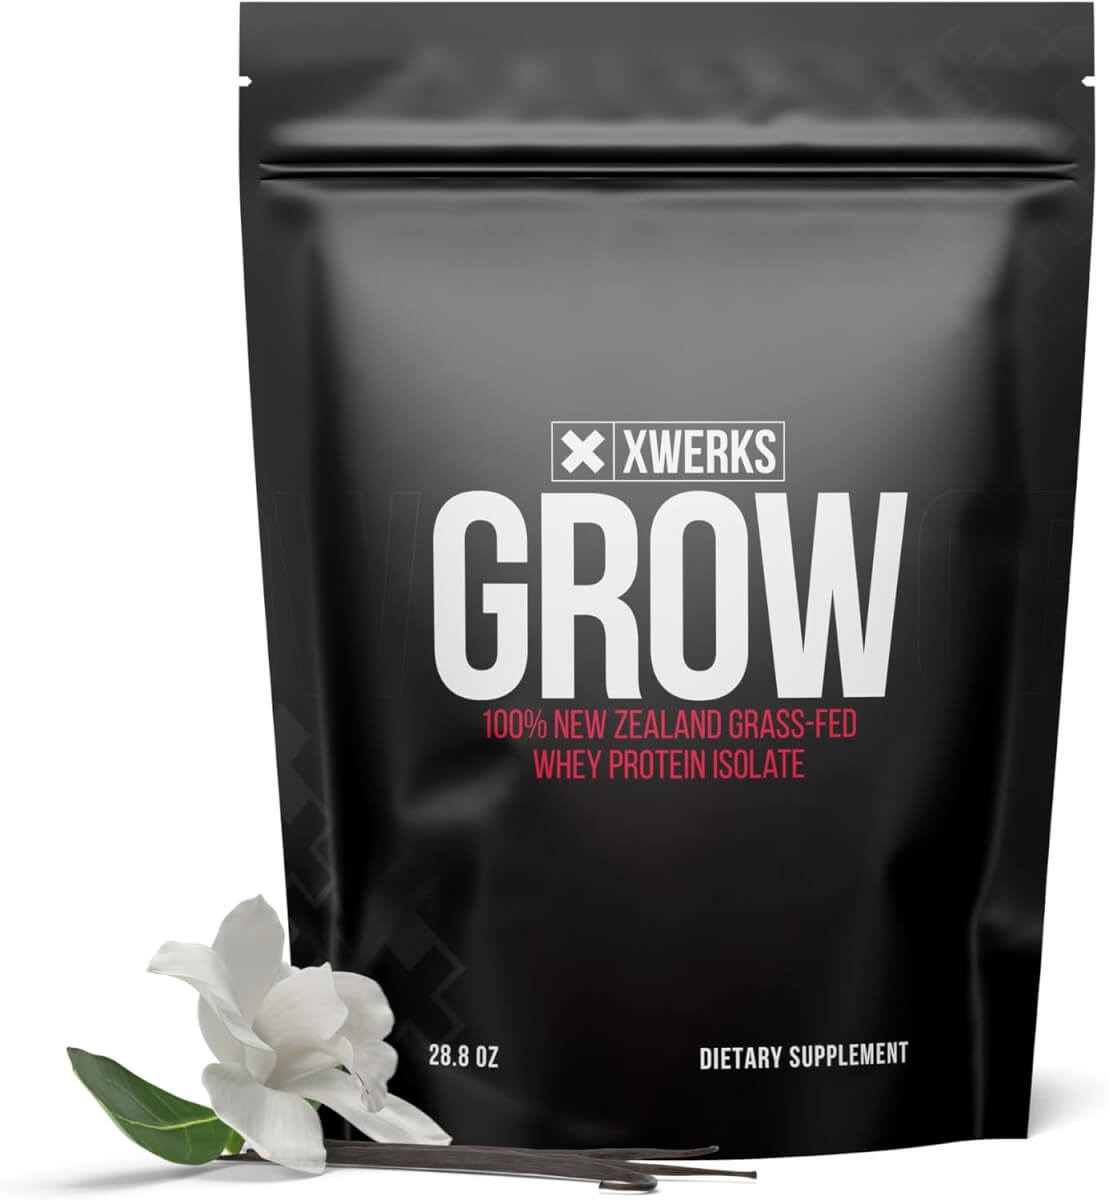 Xwerks Grow 100% New Zealand Grass-Fed Whey Protein Isolate